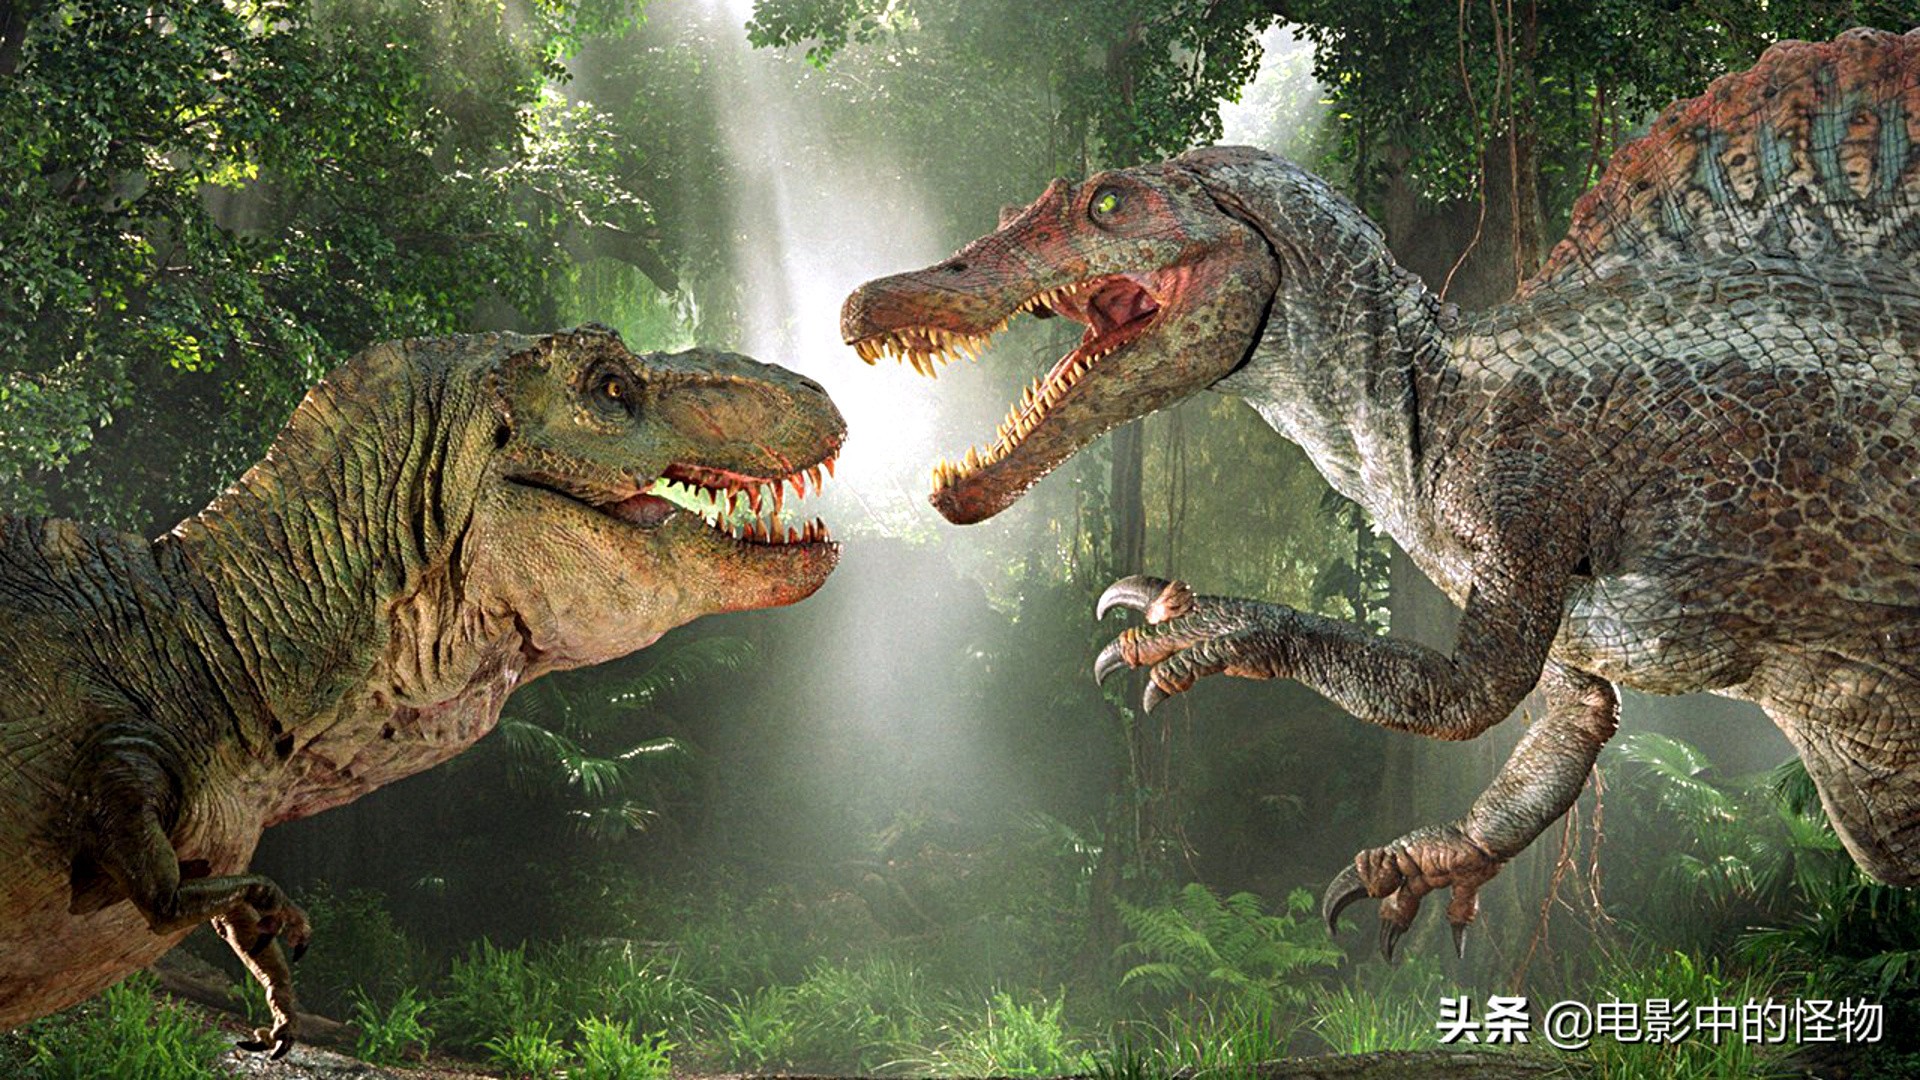 基因南方巨兽龙图片(《侏罗纪世界3》南方巨兽龙完整造型，《奇异博士2》也有恐龙登场)